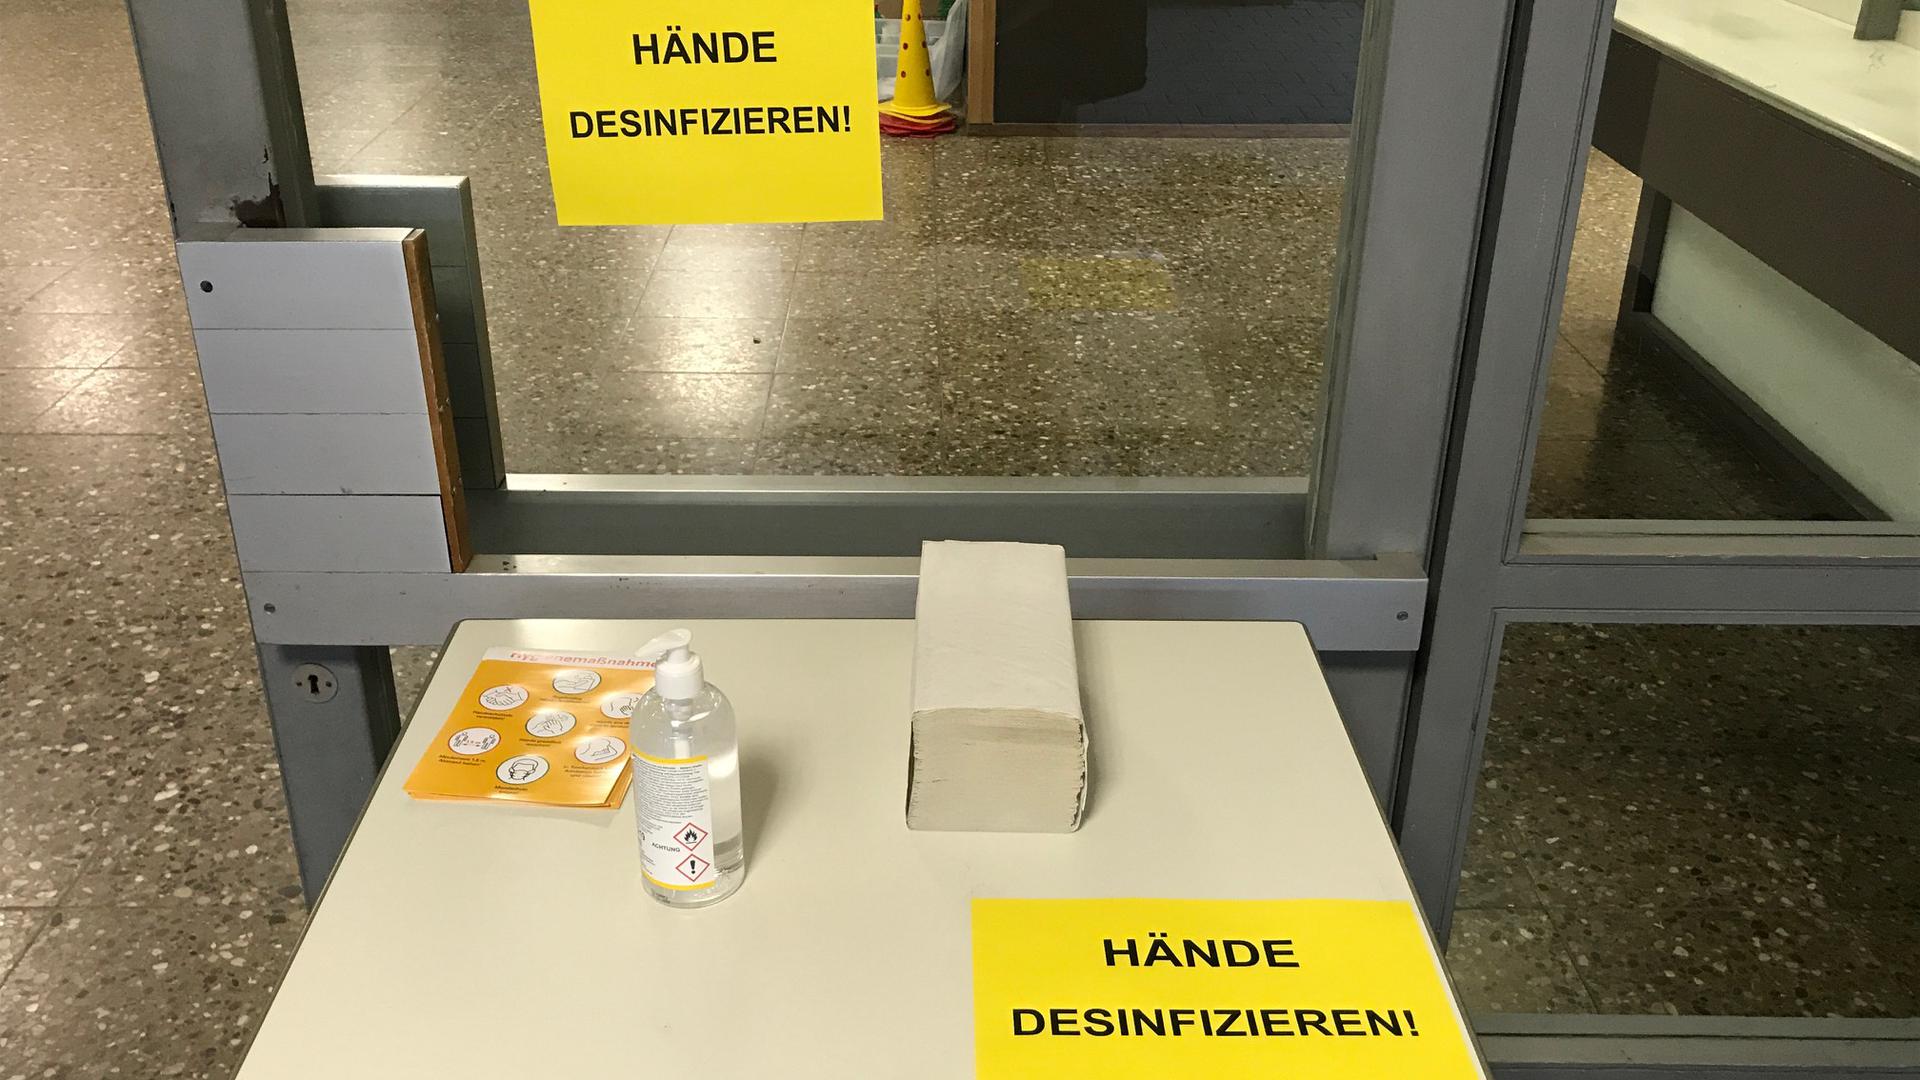 Die Hygienemaßnahmen sind wegen des Coronavirus an allen Schulen verschärft, wie hier in Pforzheim.